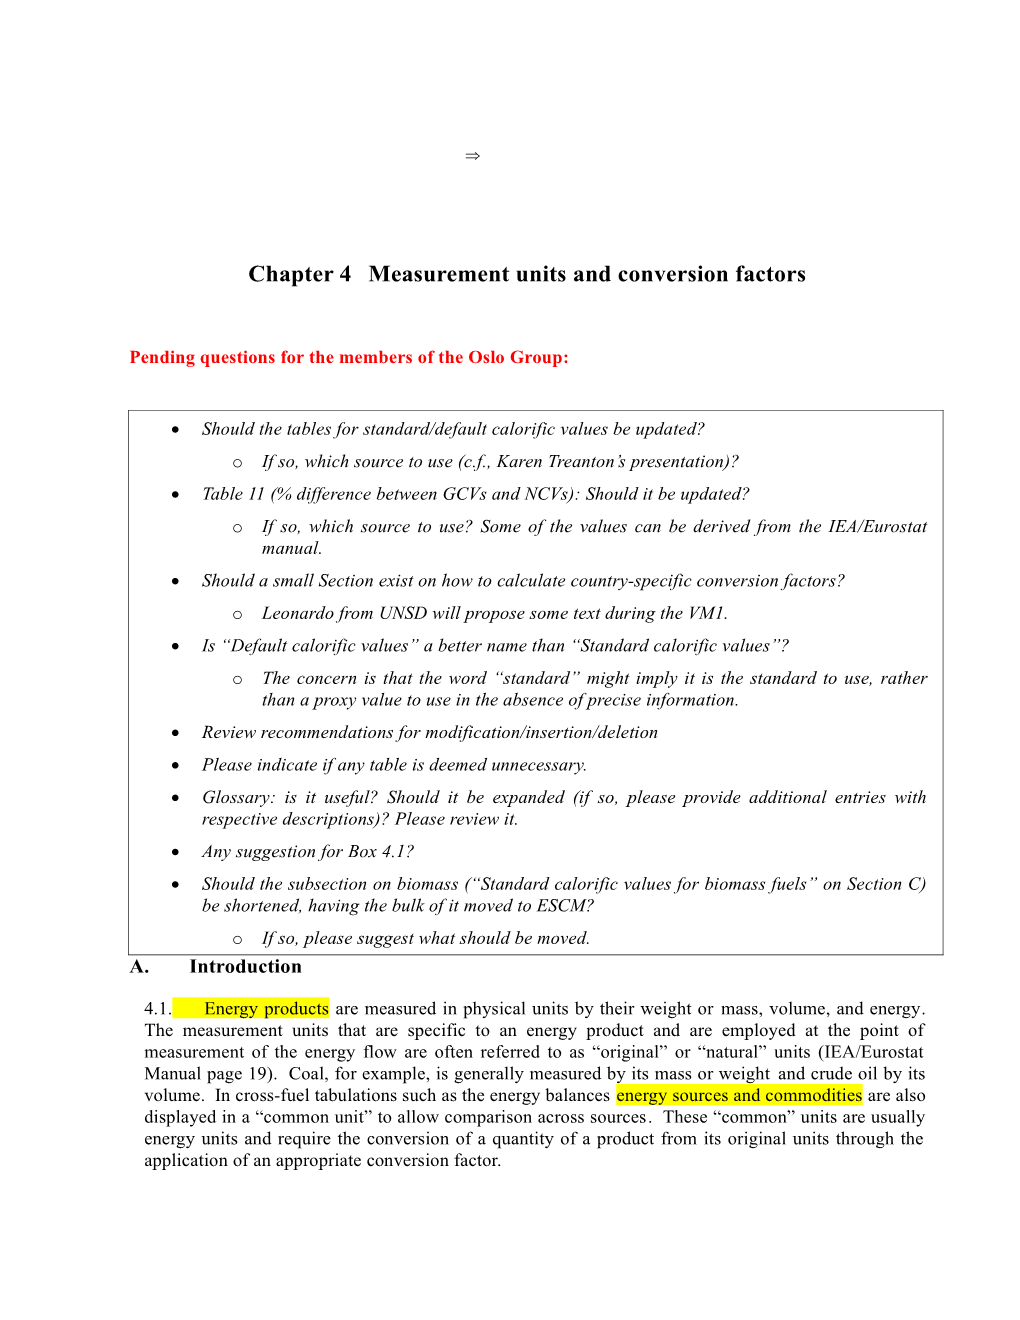 Chapter 4 Measurement Units and Conversion Factors